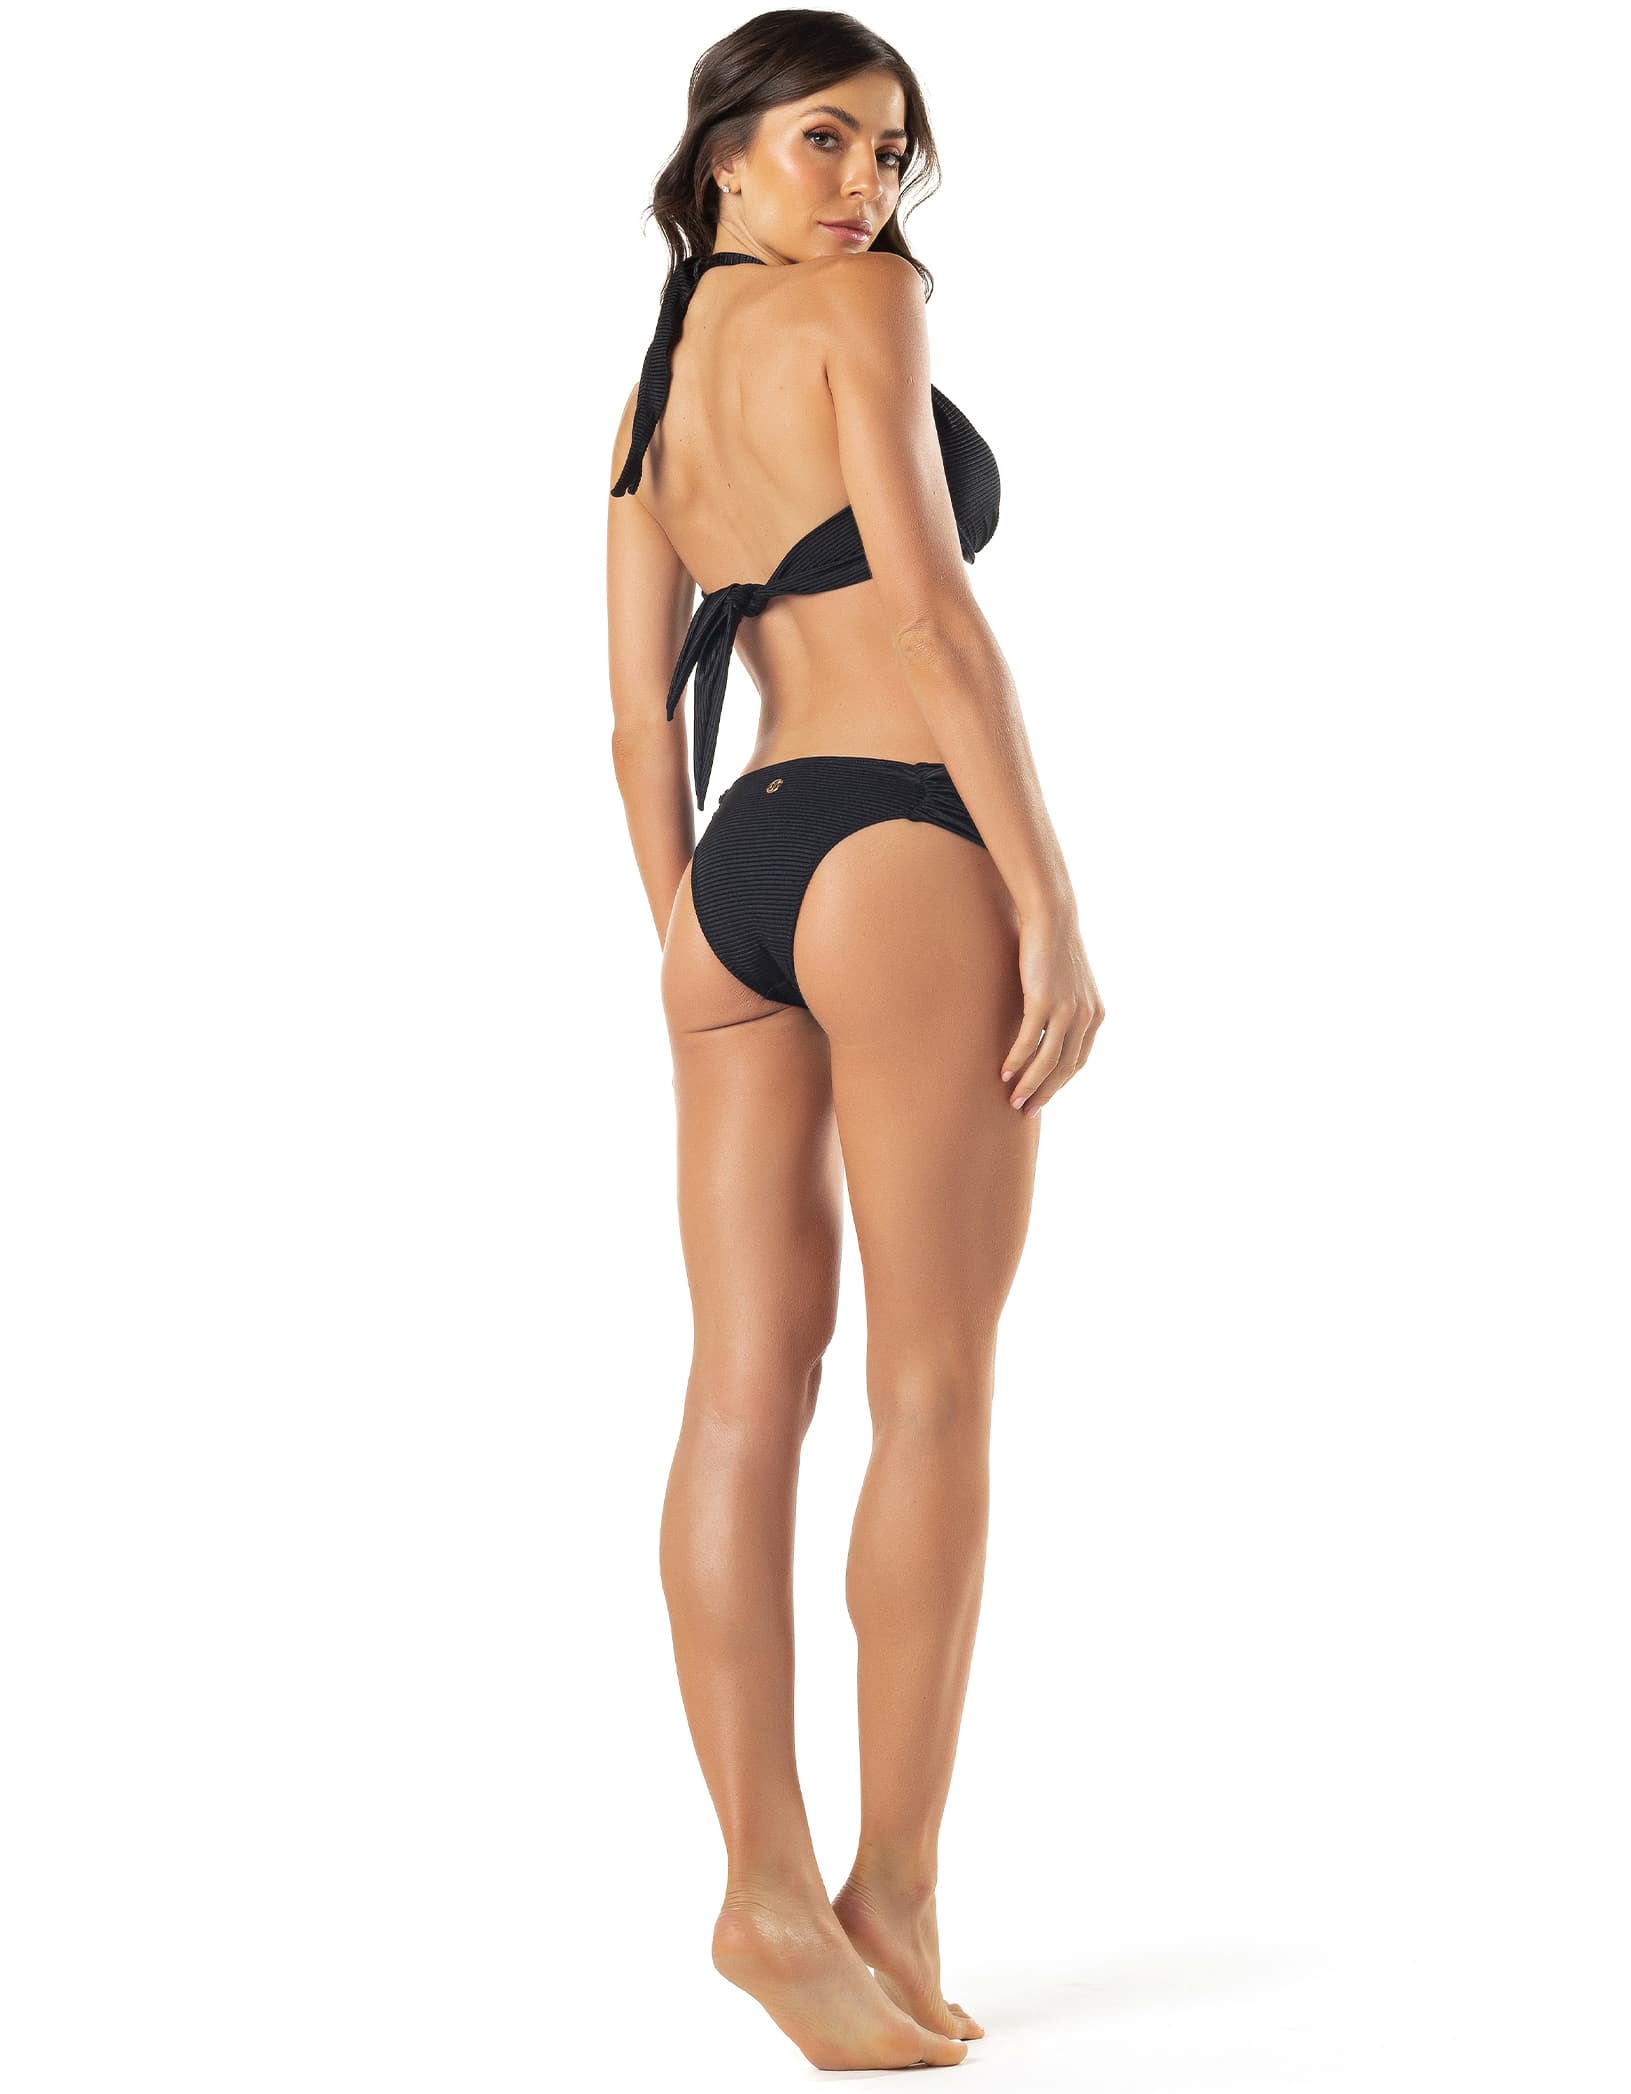 Vestem - Black Ophelia Texture Push Up Bikini Top - BJ187C0002